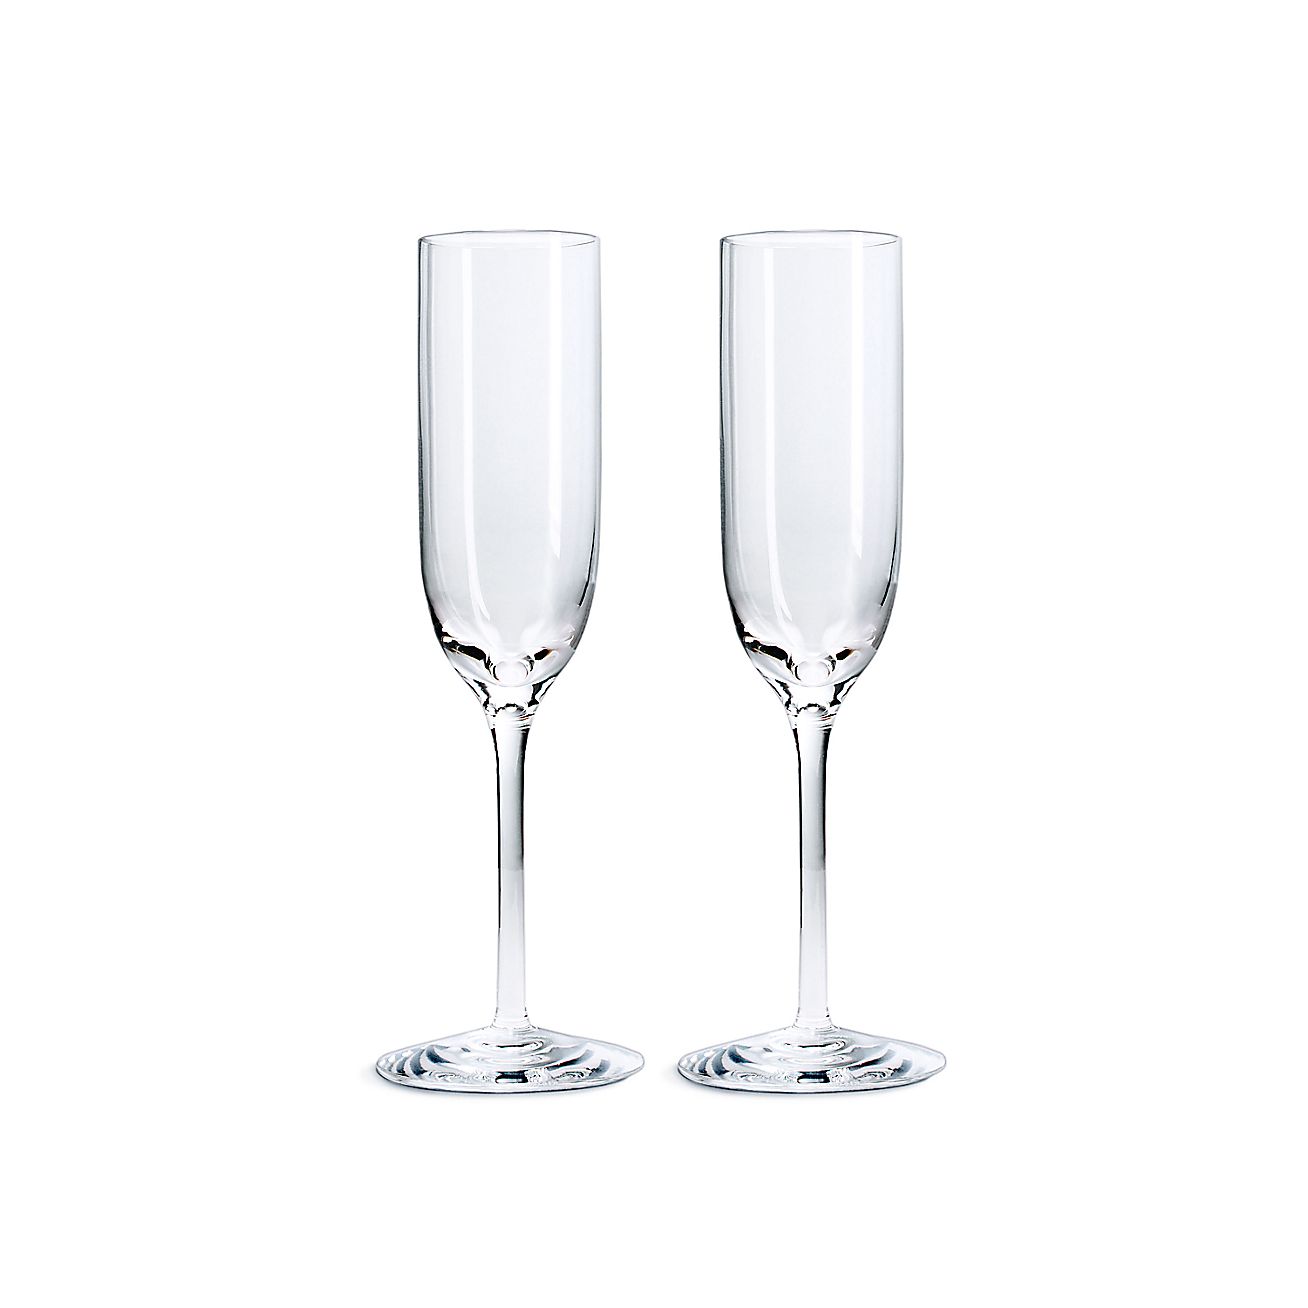 champagne flute glasses asda